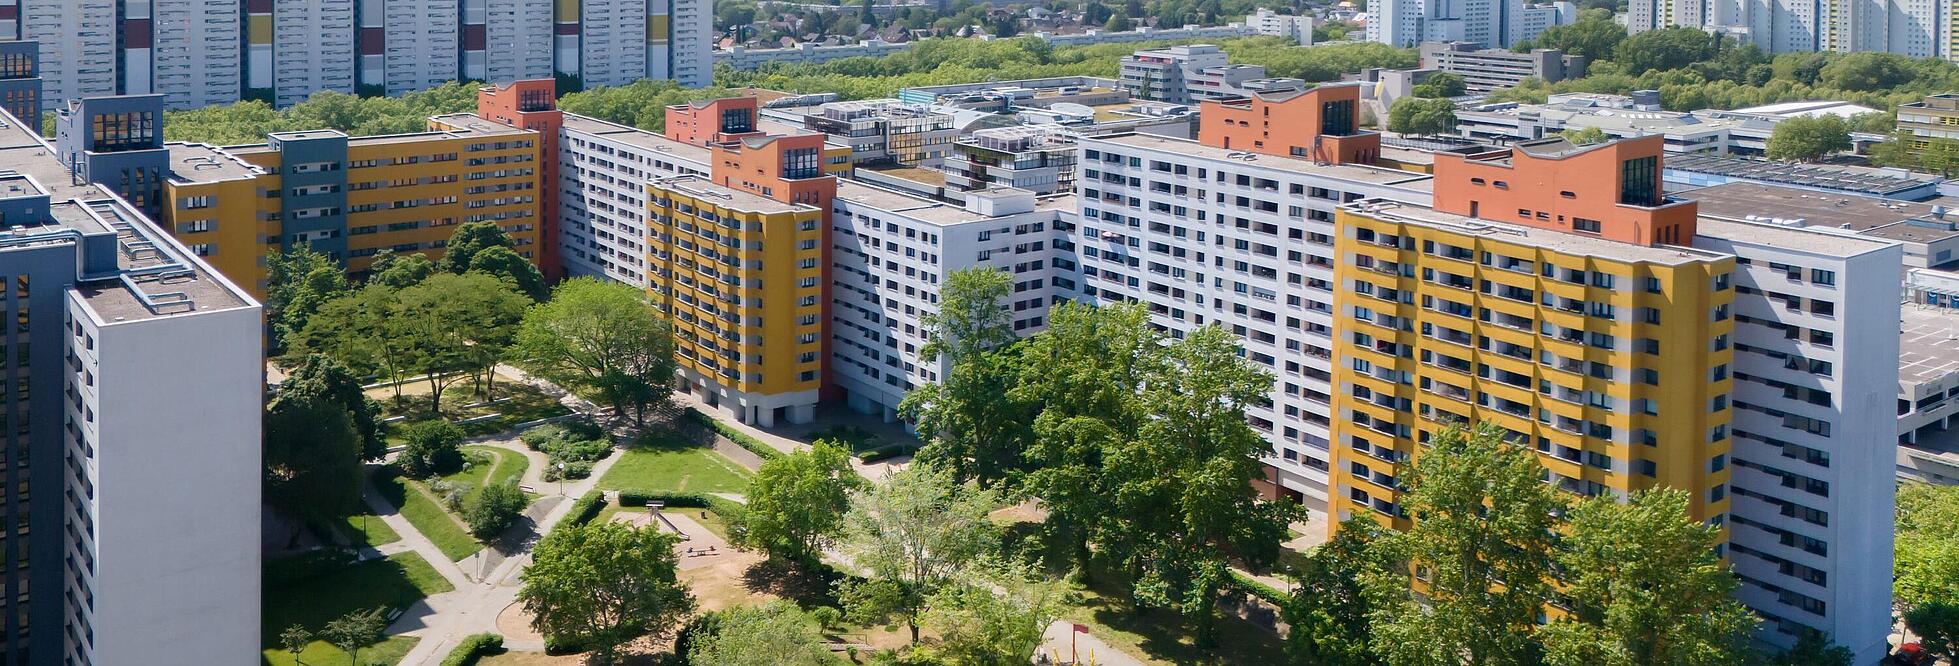 Bild zeigt Luftaufnahme Wohnhausgruppe 911 und 922 - Senftenberger Ring, Wilhelmsruher Damm, Treuenbrietzener Straße.